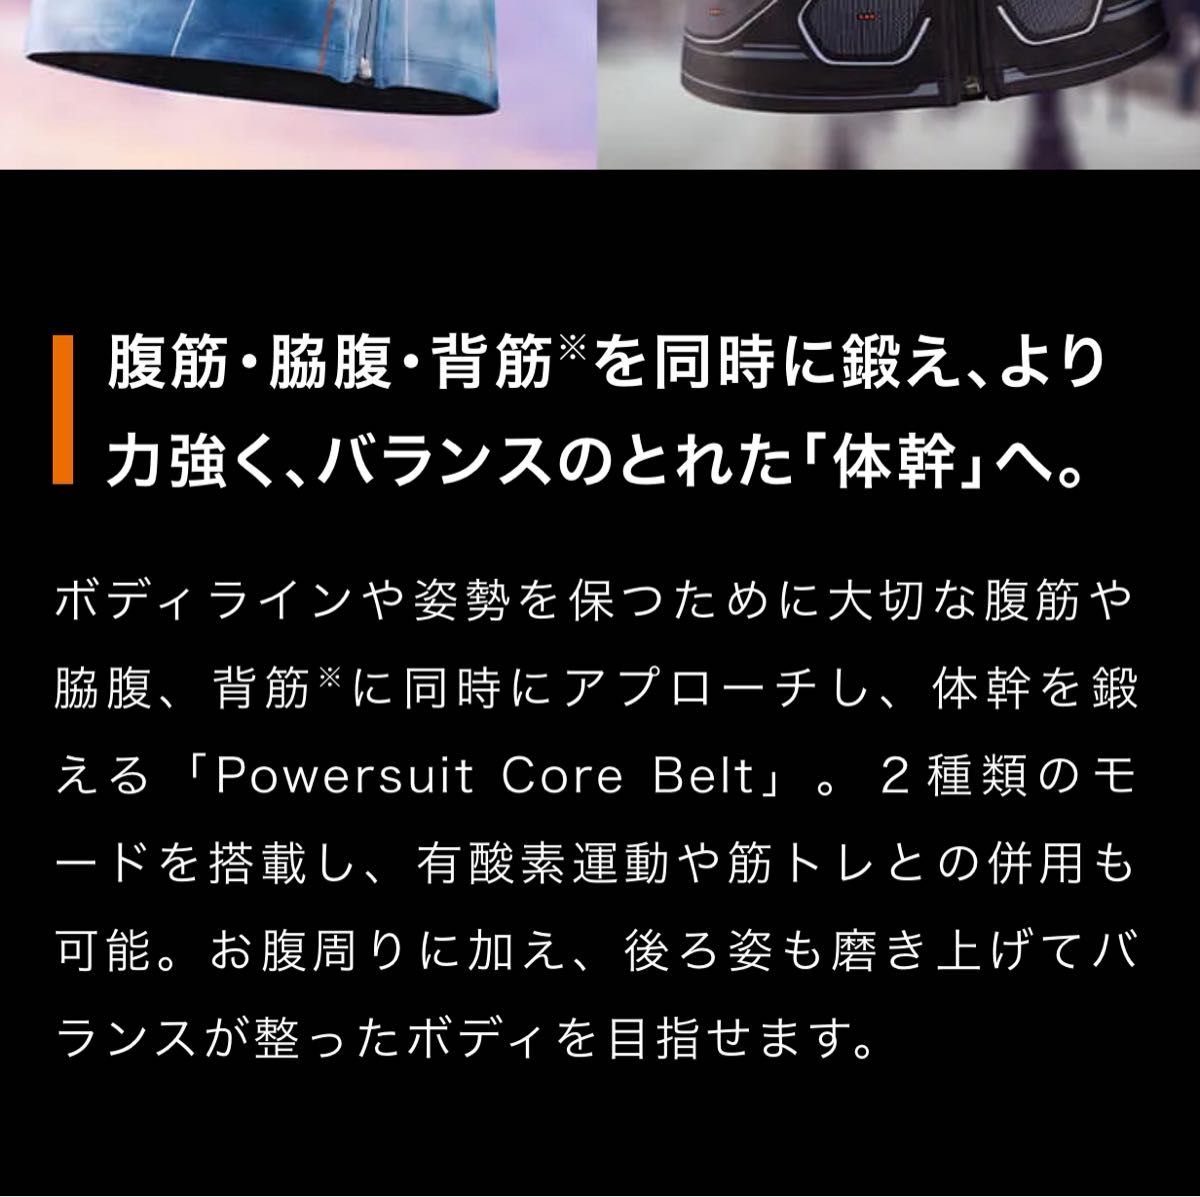 SIXPAD シックスパッド Powersuit Core Belt パワースーツコアベルト サイズL  コントローラー付